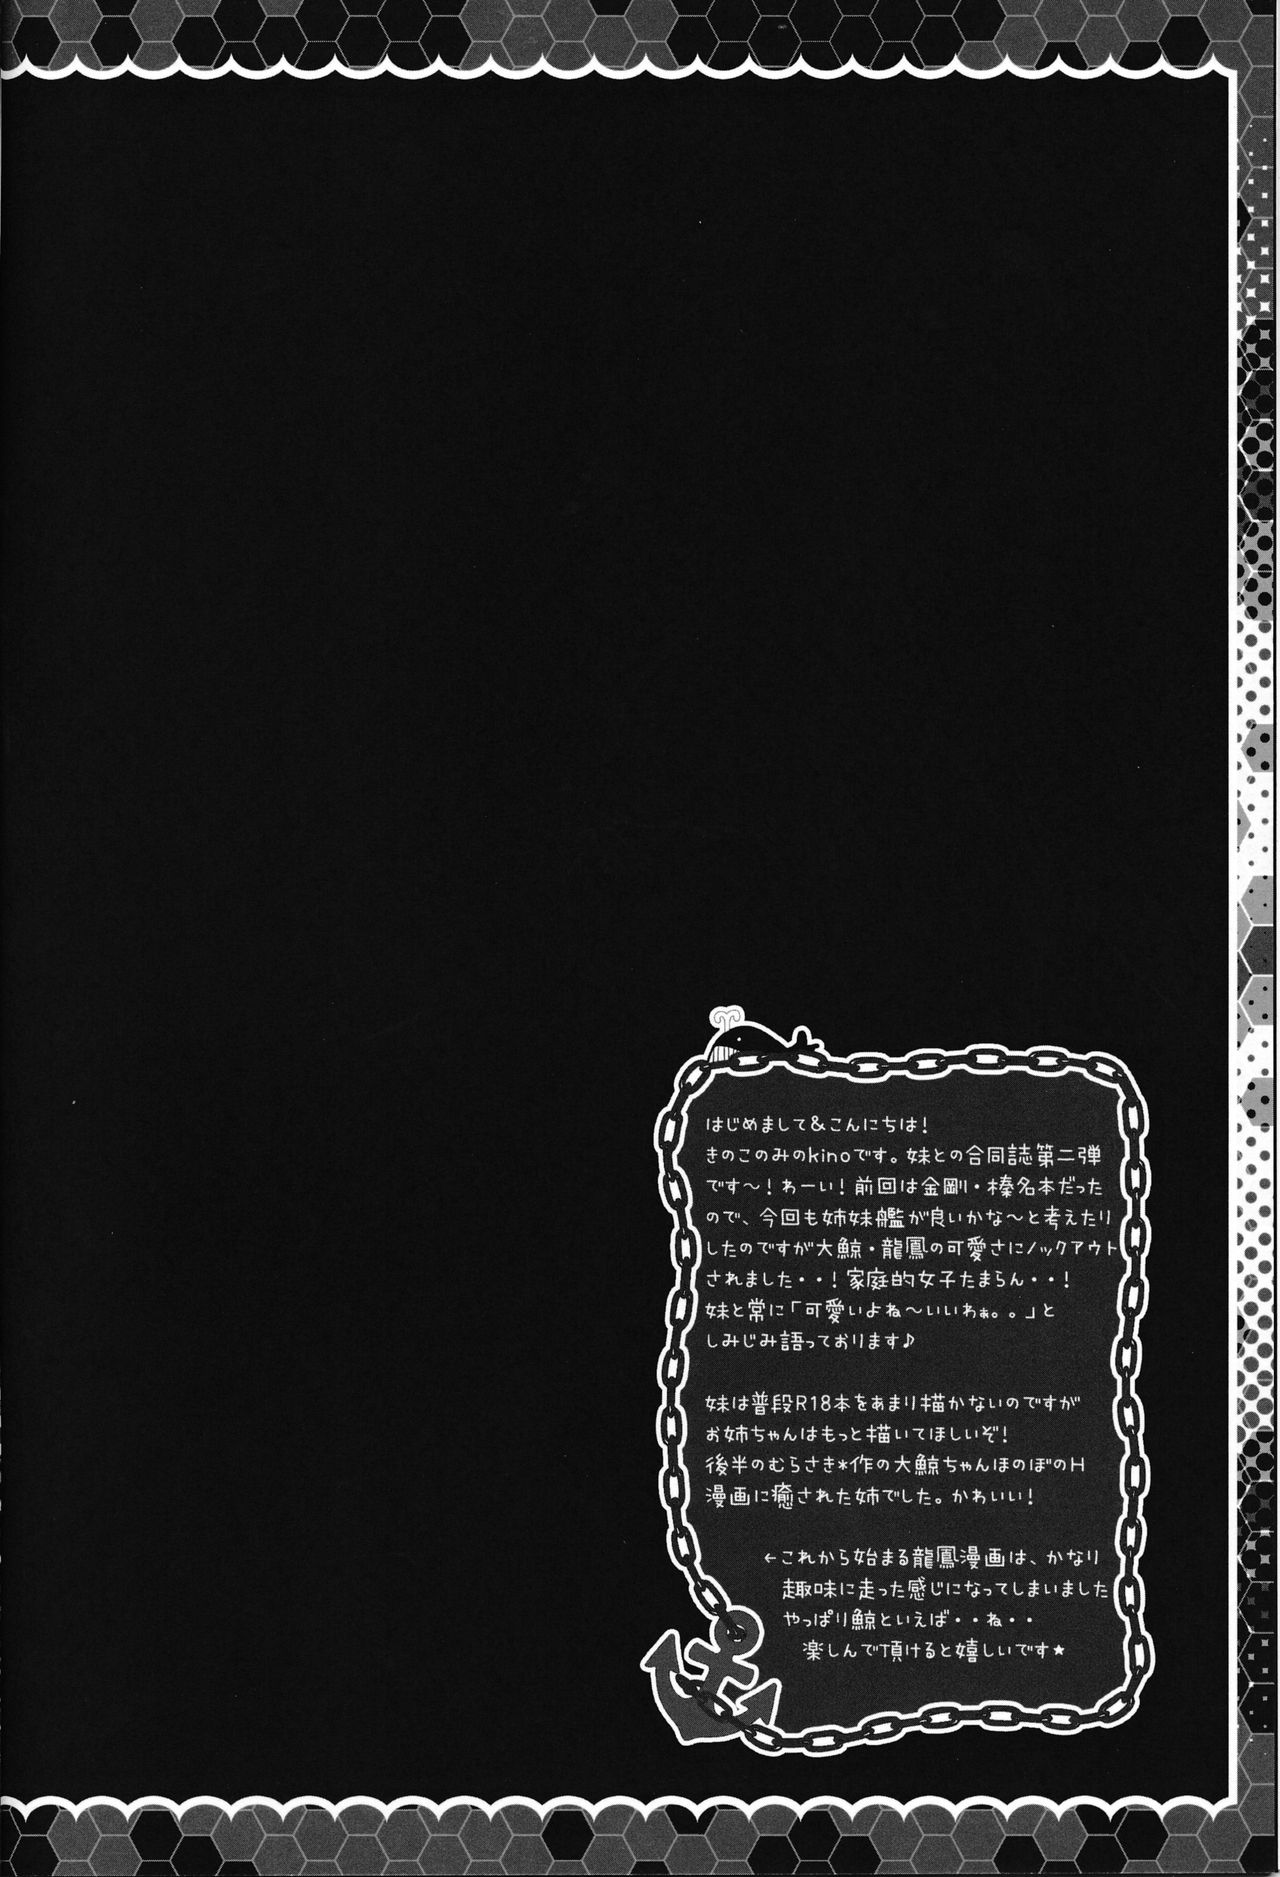 (Gunreibu Shuho & Houraigekisen! Yo-i! Goudou Enshuu 2Senme) [Kinokonomi, Murasakiiro no Yoru (kino, Murasaki)] Taigei Ryuuhou wa Teitoku to Nakayoshi (Kantai Collection -KanColle-) (軍令部酒保&砲雷撃戦!よーい!合同演習弐戦目) [きのこのみ、むらさきいろのよる (kino、むらさき)] 大鯨龍鳳は提督となかよし (艦隊これくしょん -艦これ-)